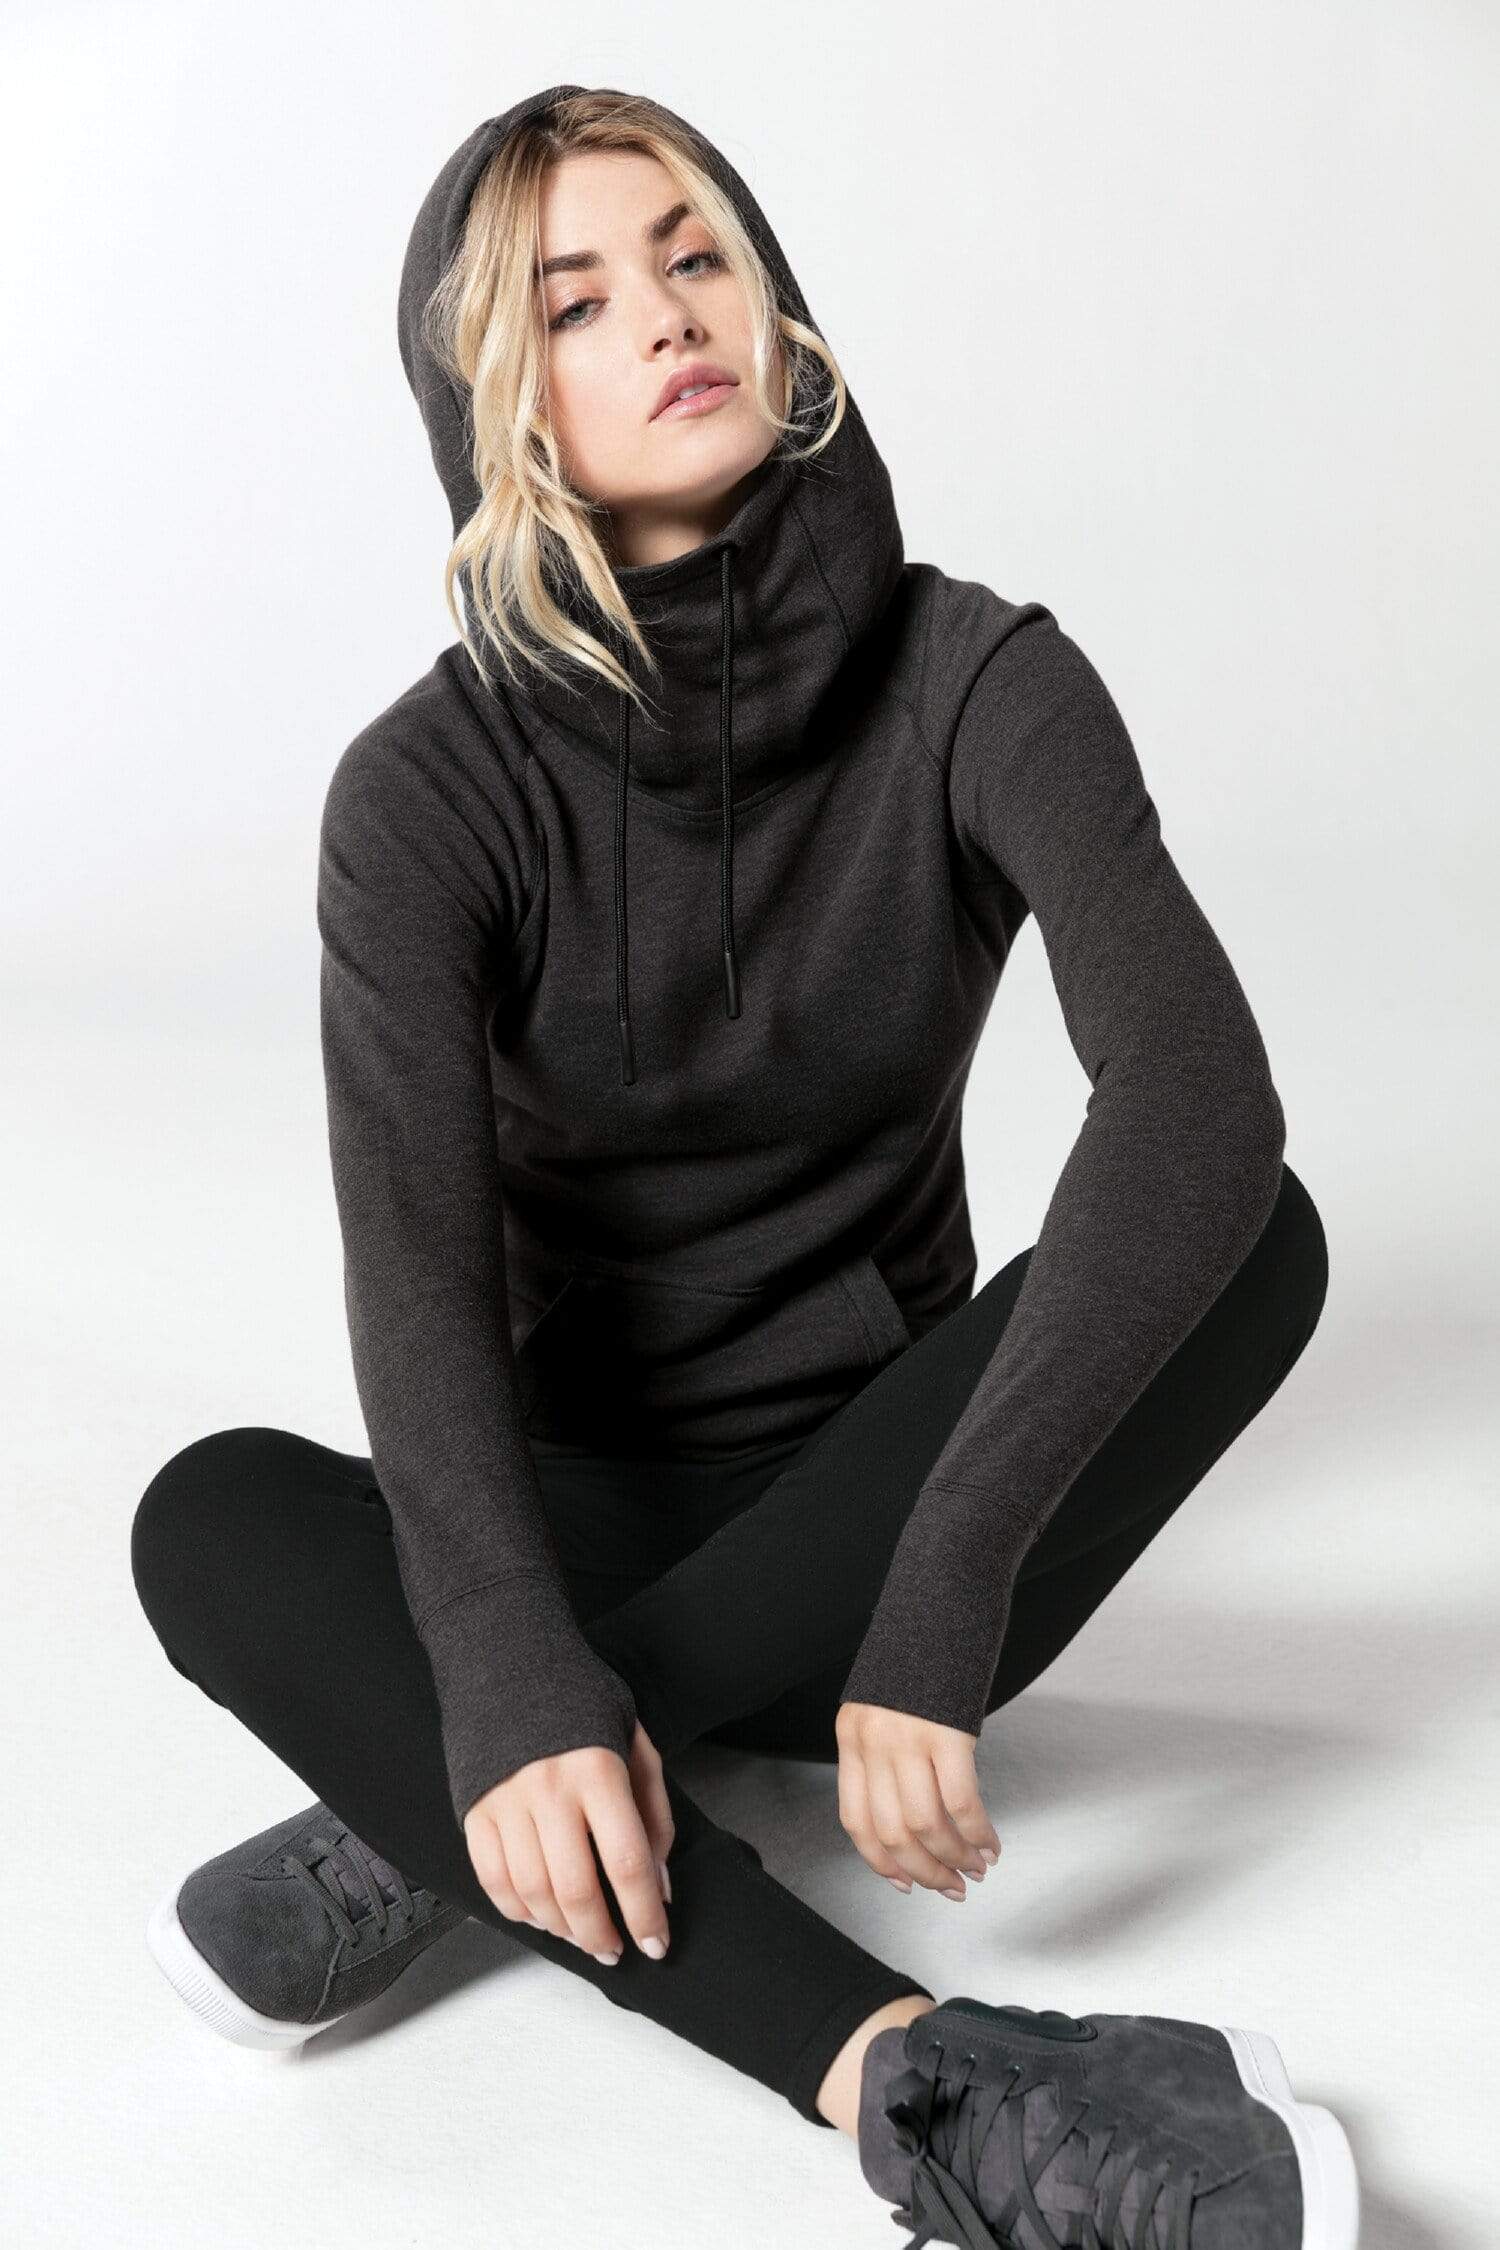 Black Heather / XS Custom Ladies Tri-Blend Fleece Pullover Hoodie